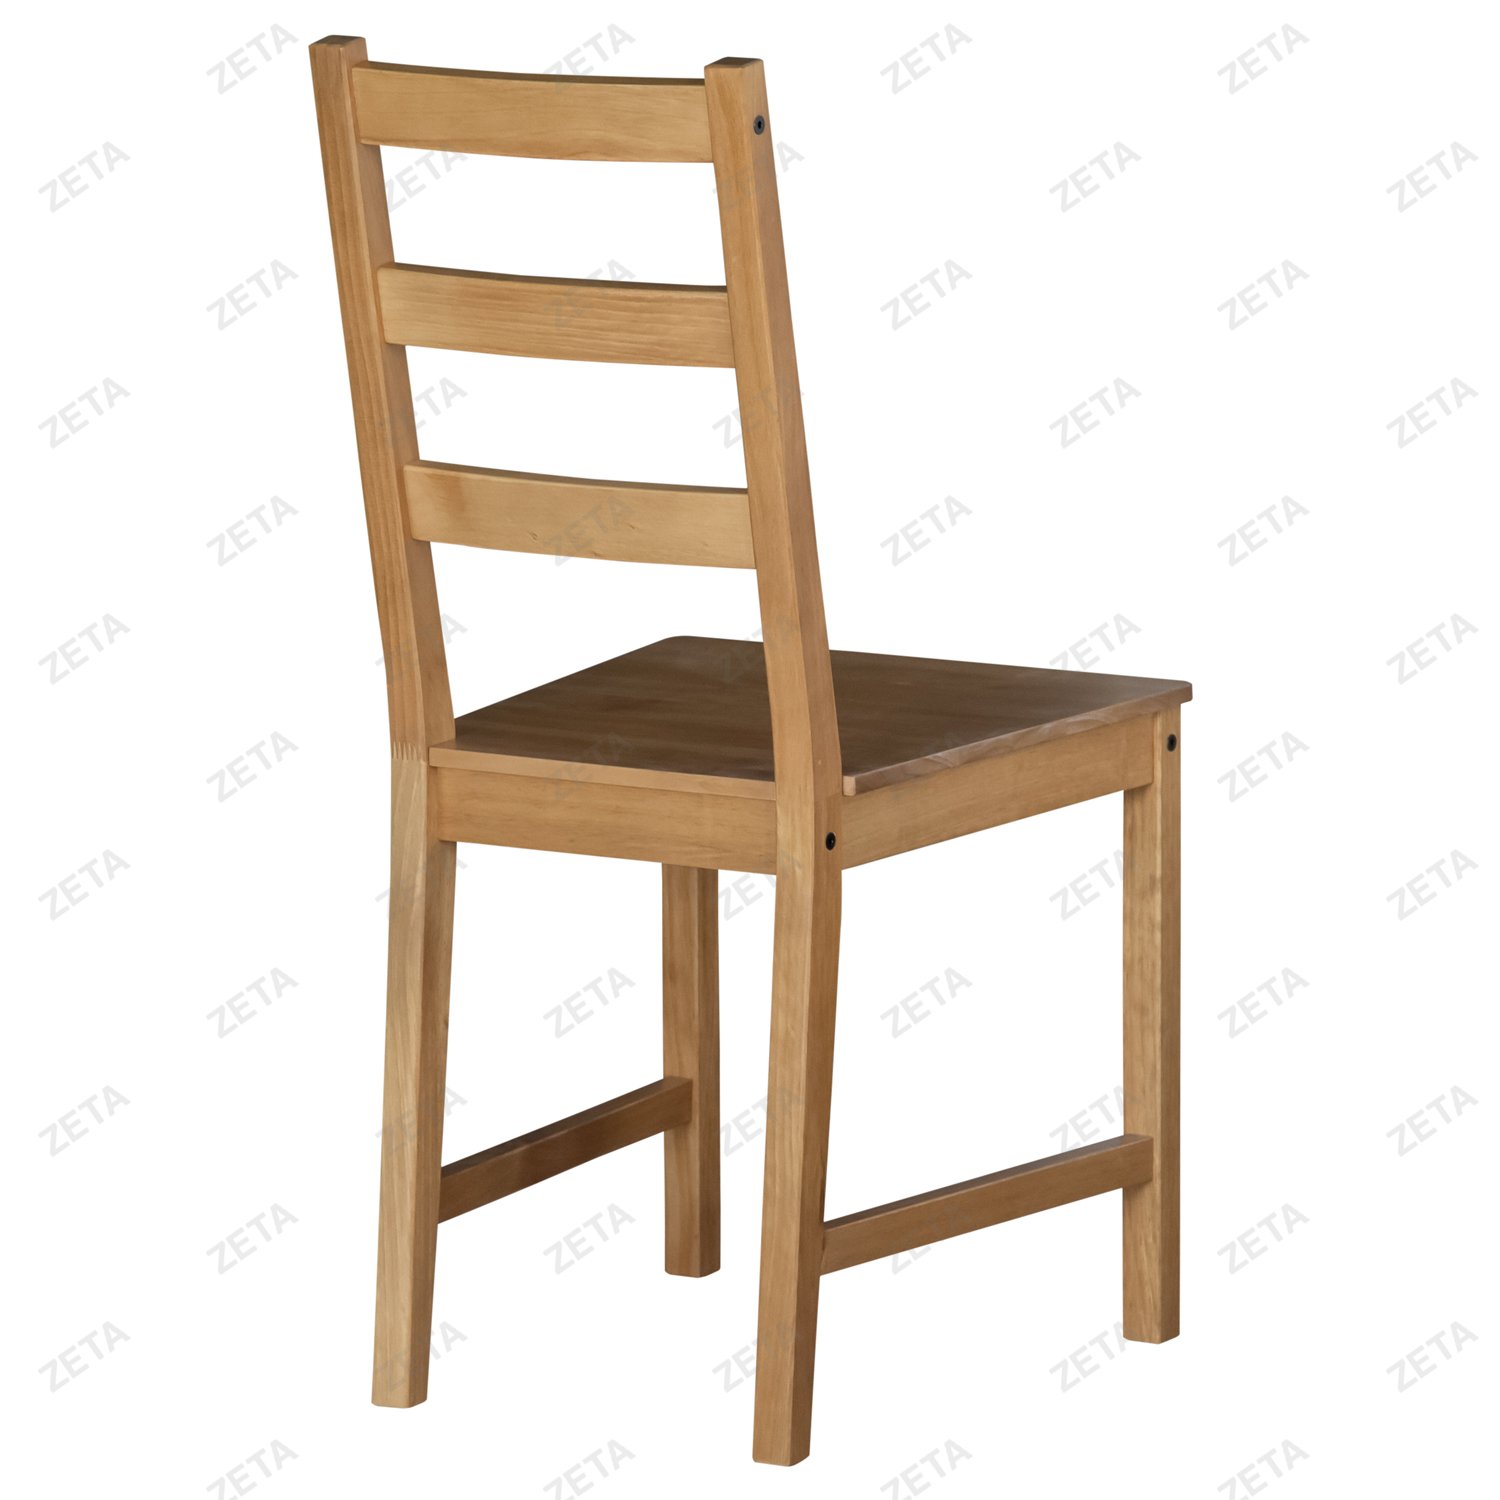 Стул "Ladder Back" (натуральный) от производителей IKEA (ВИ) - изображение 3